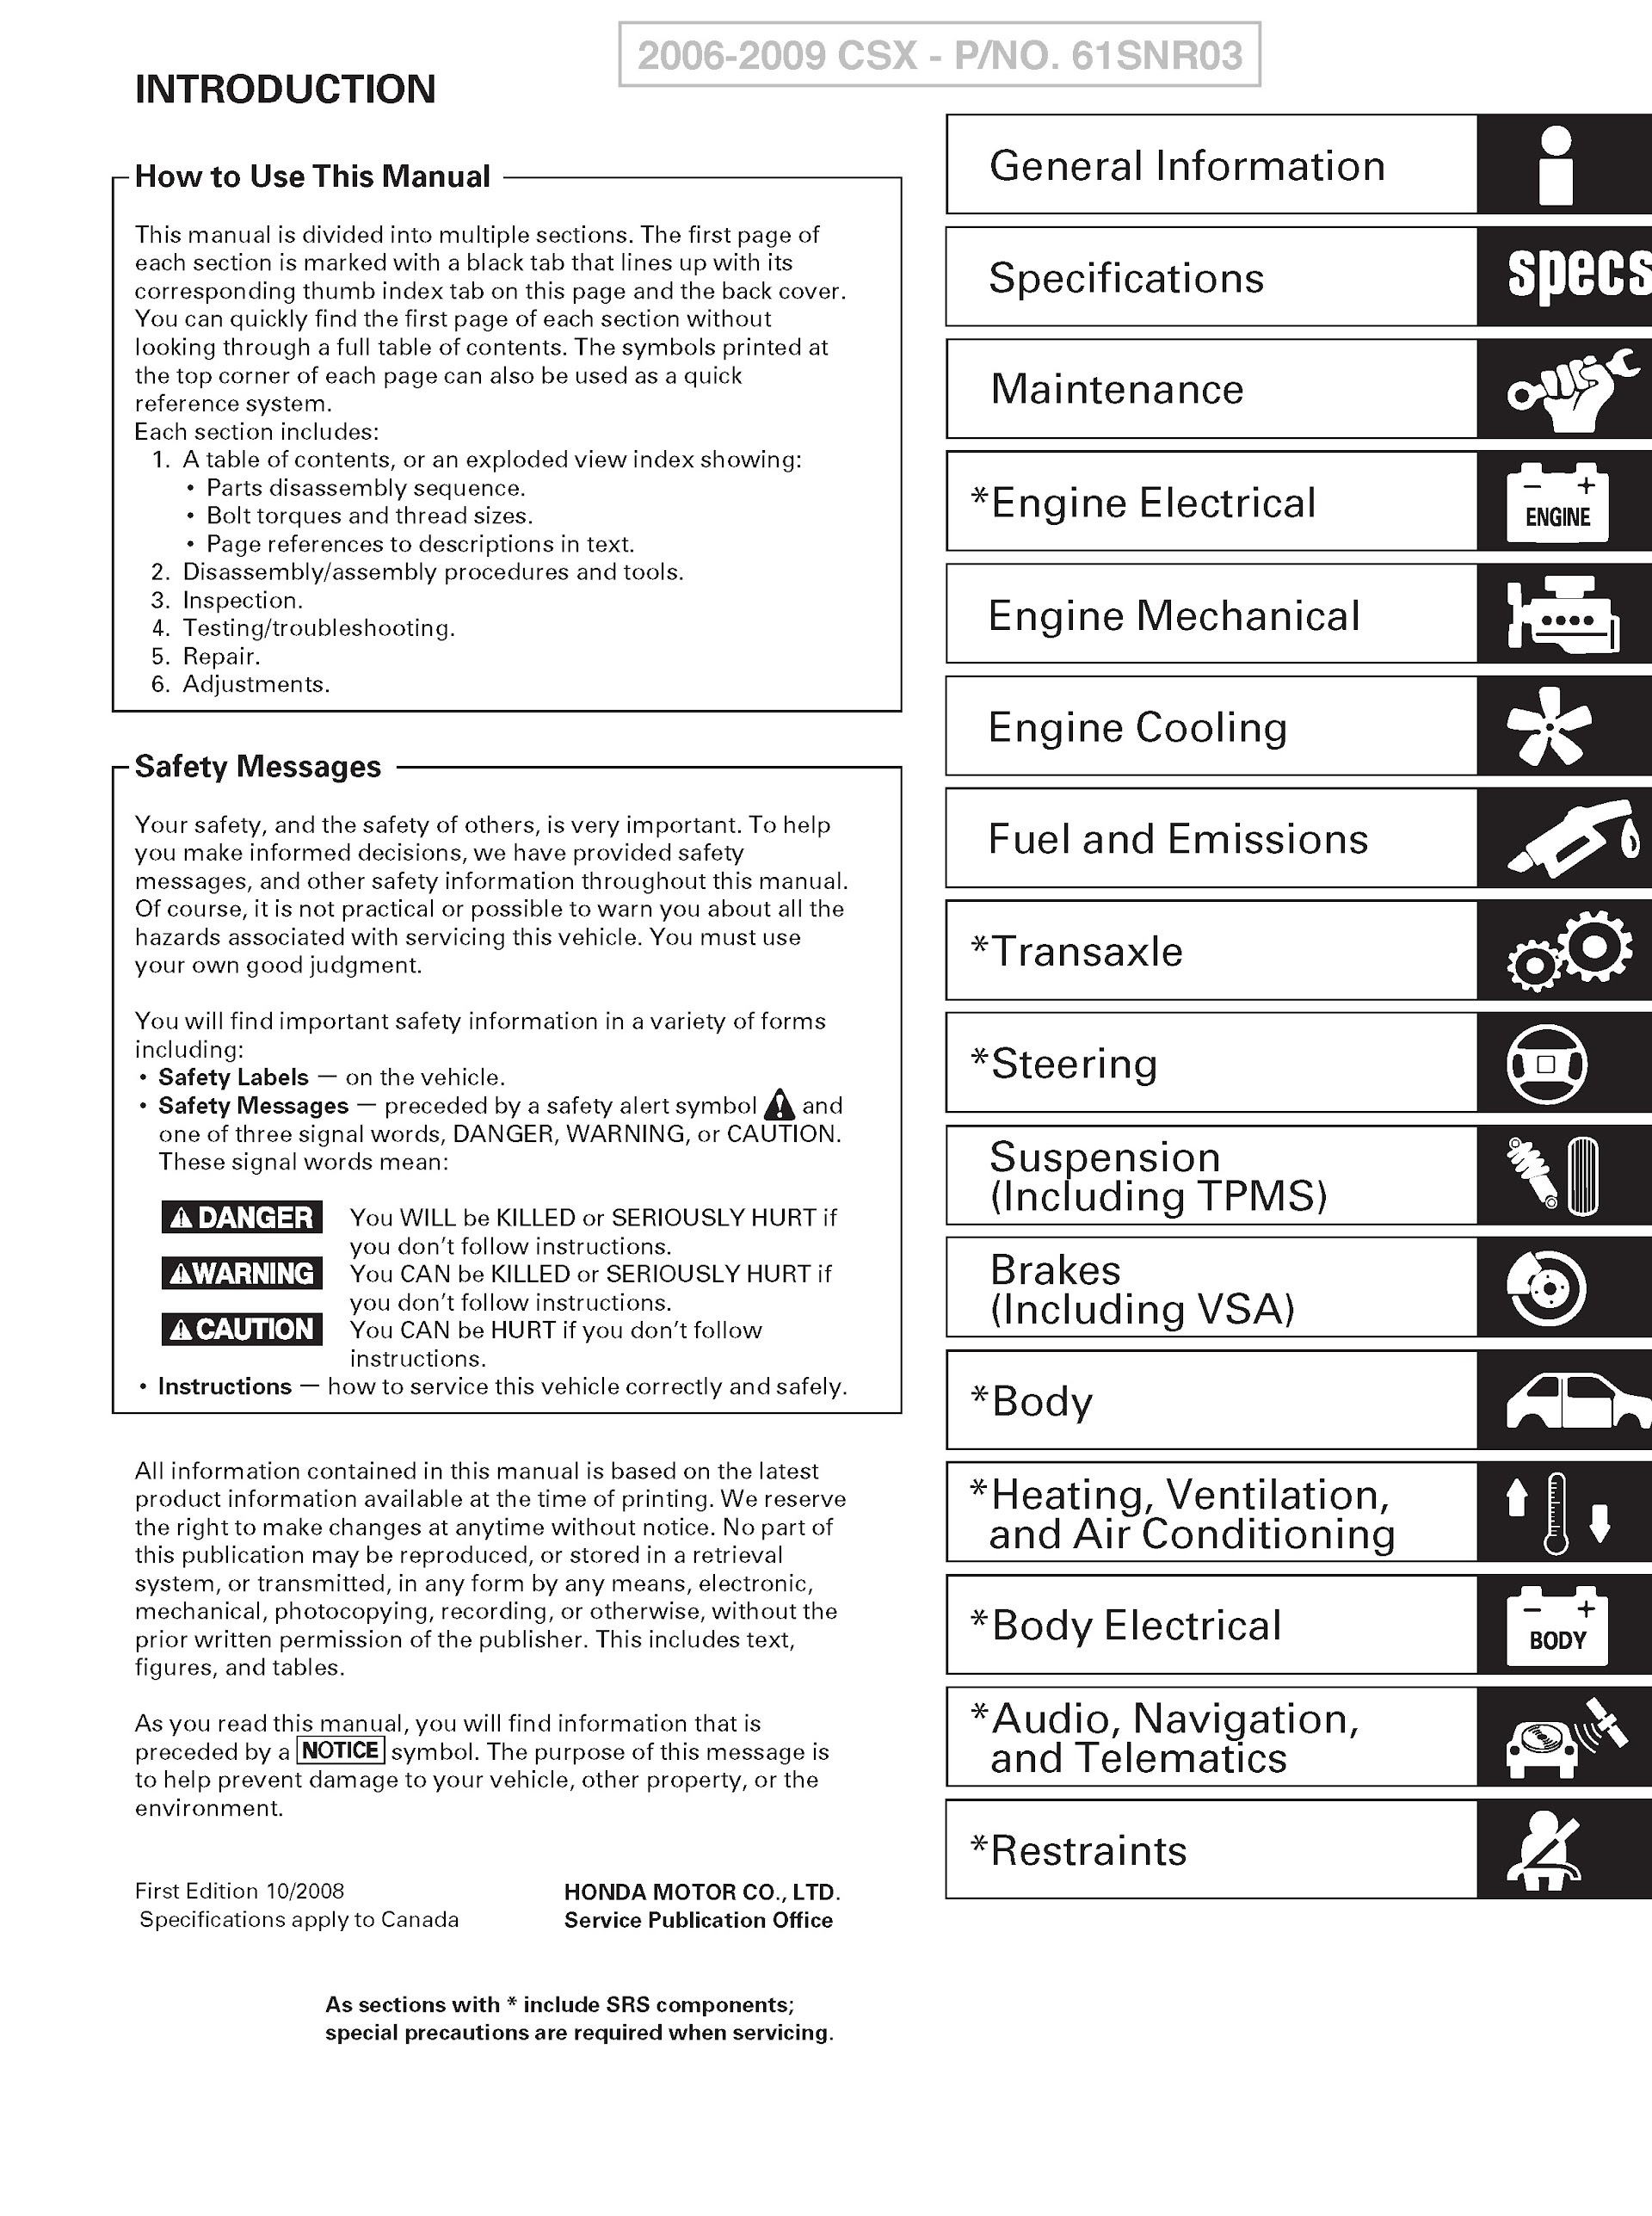 Contents 2009 Acura CSX Repair Manual